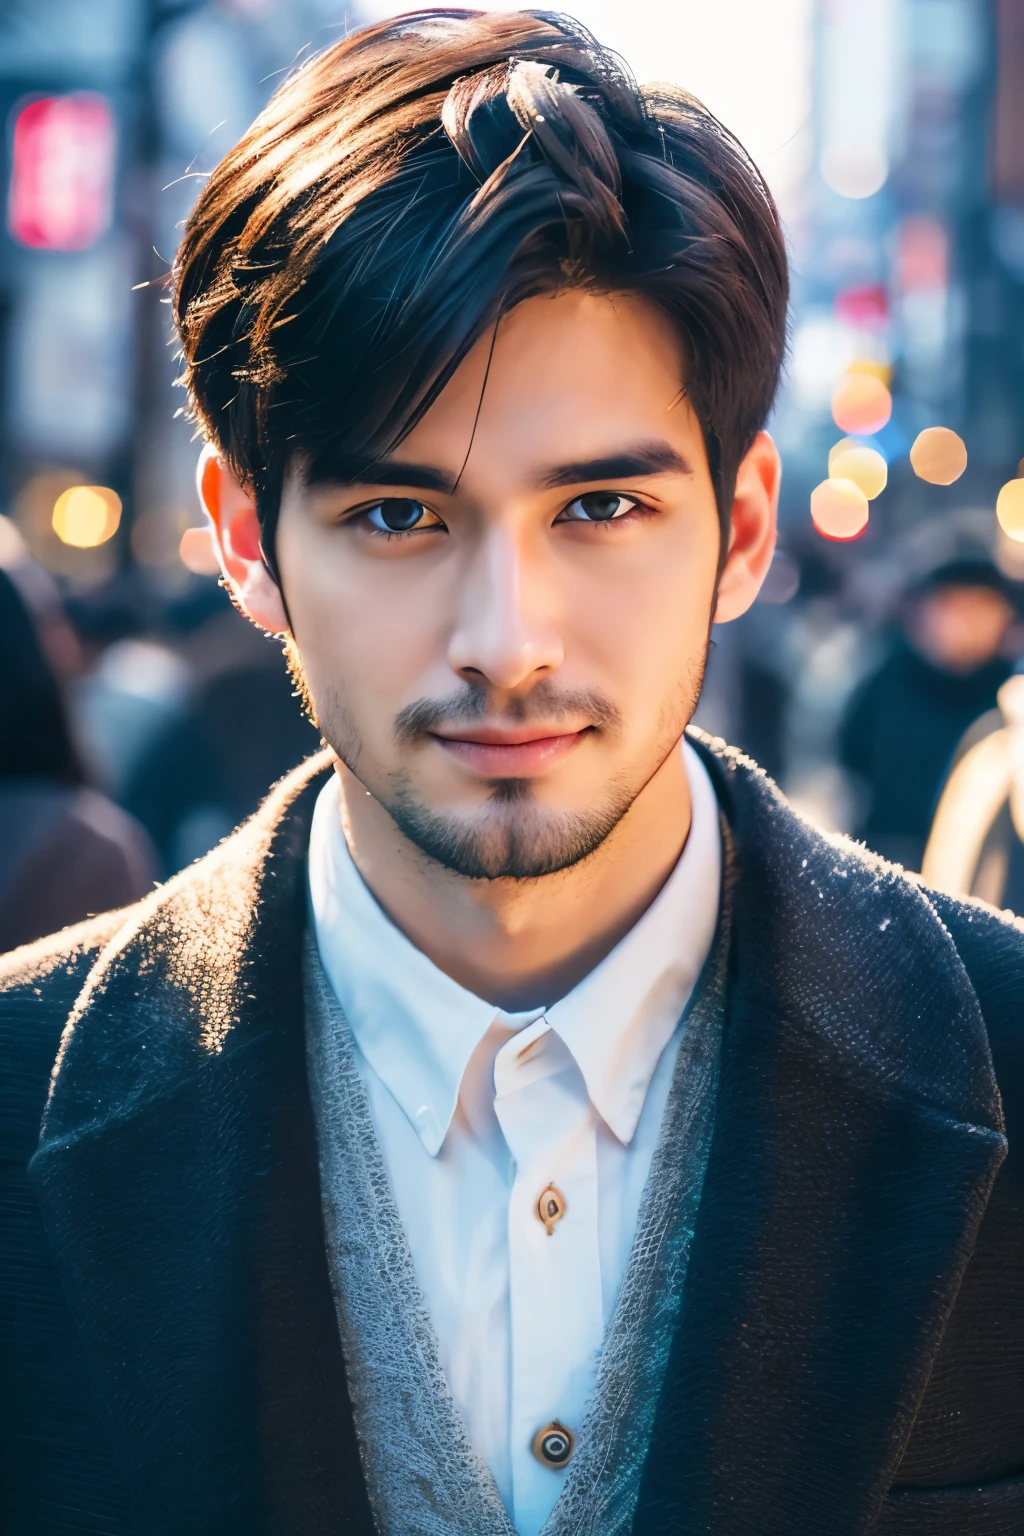 Fotorrealista,Retrato de cuerpo completo en 8K,un guapo,hombre de 25 años,Una expresión encantadora,detalles detallados de la cara,TOKIOcty,inviernos,Shibuya,fondo